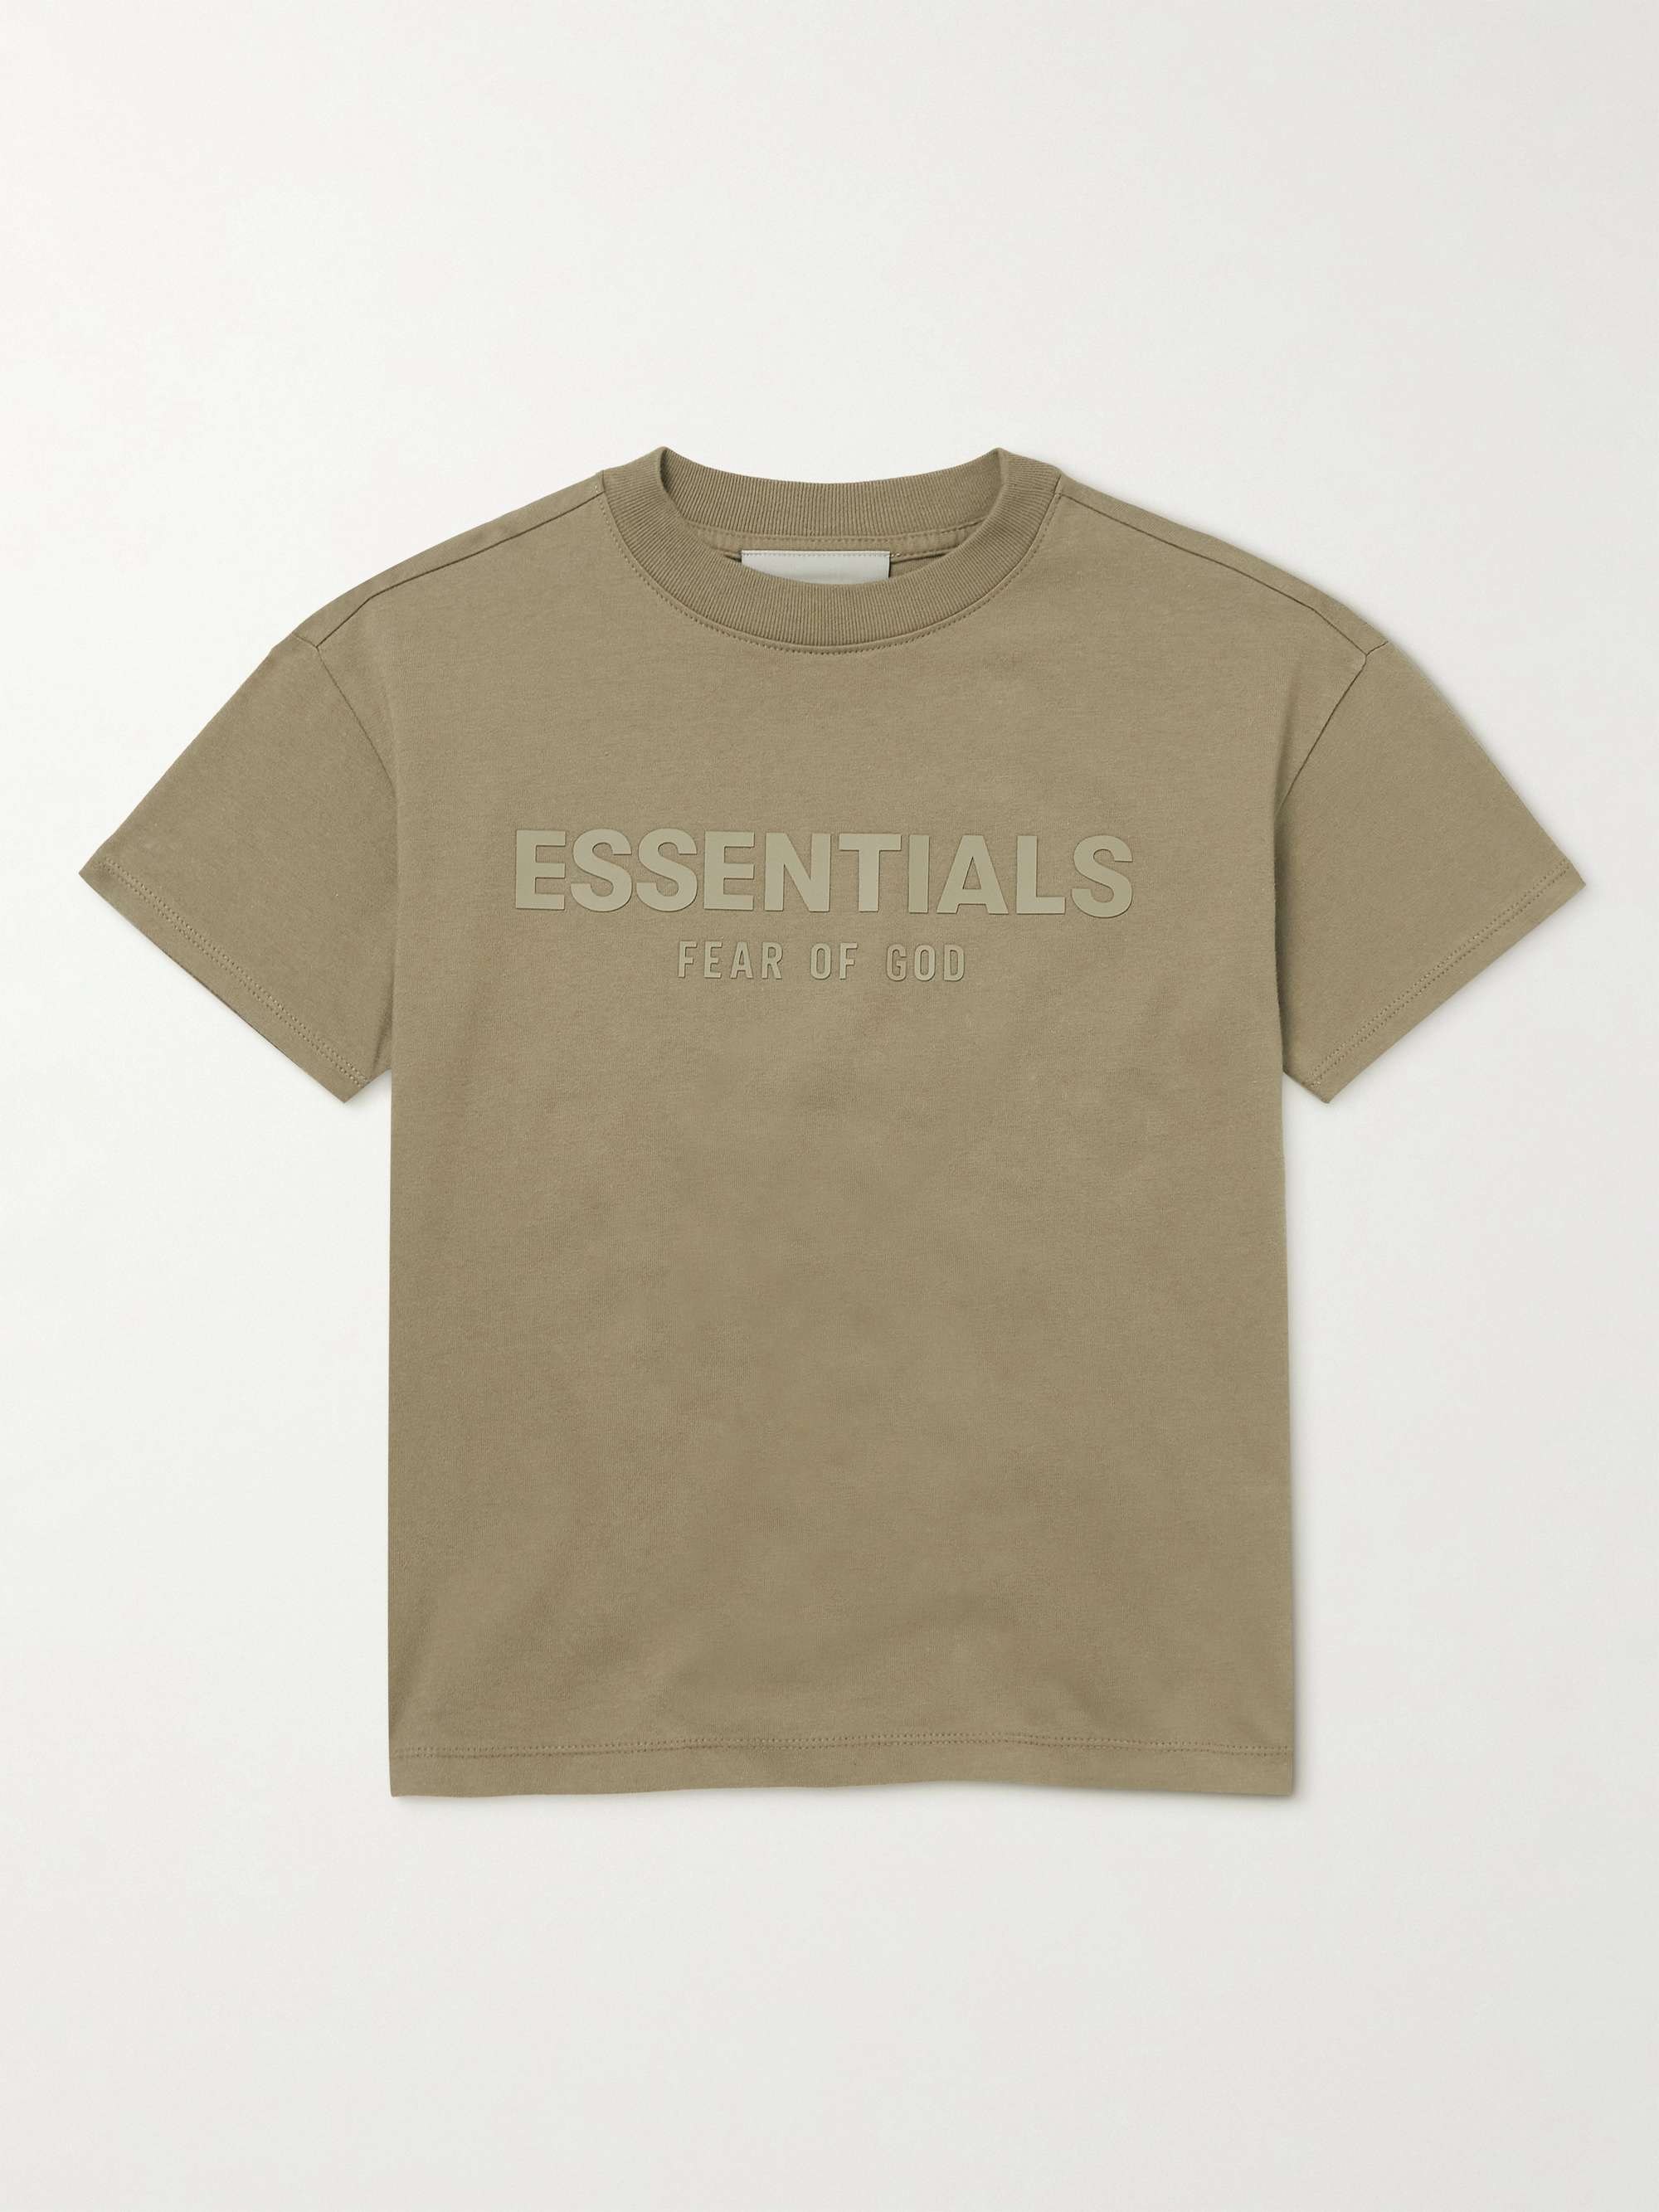 피어오브갓 에센셜 키즈 티셔츠 FEAR OF GOD ESSENTIALS KIDS Logo-Print Cotton-Jersey T-Shirt,Light brown